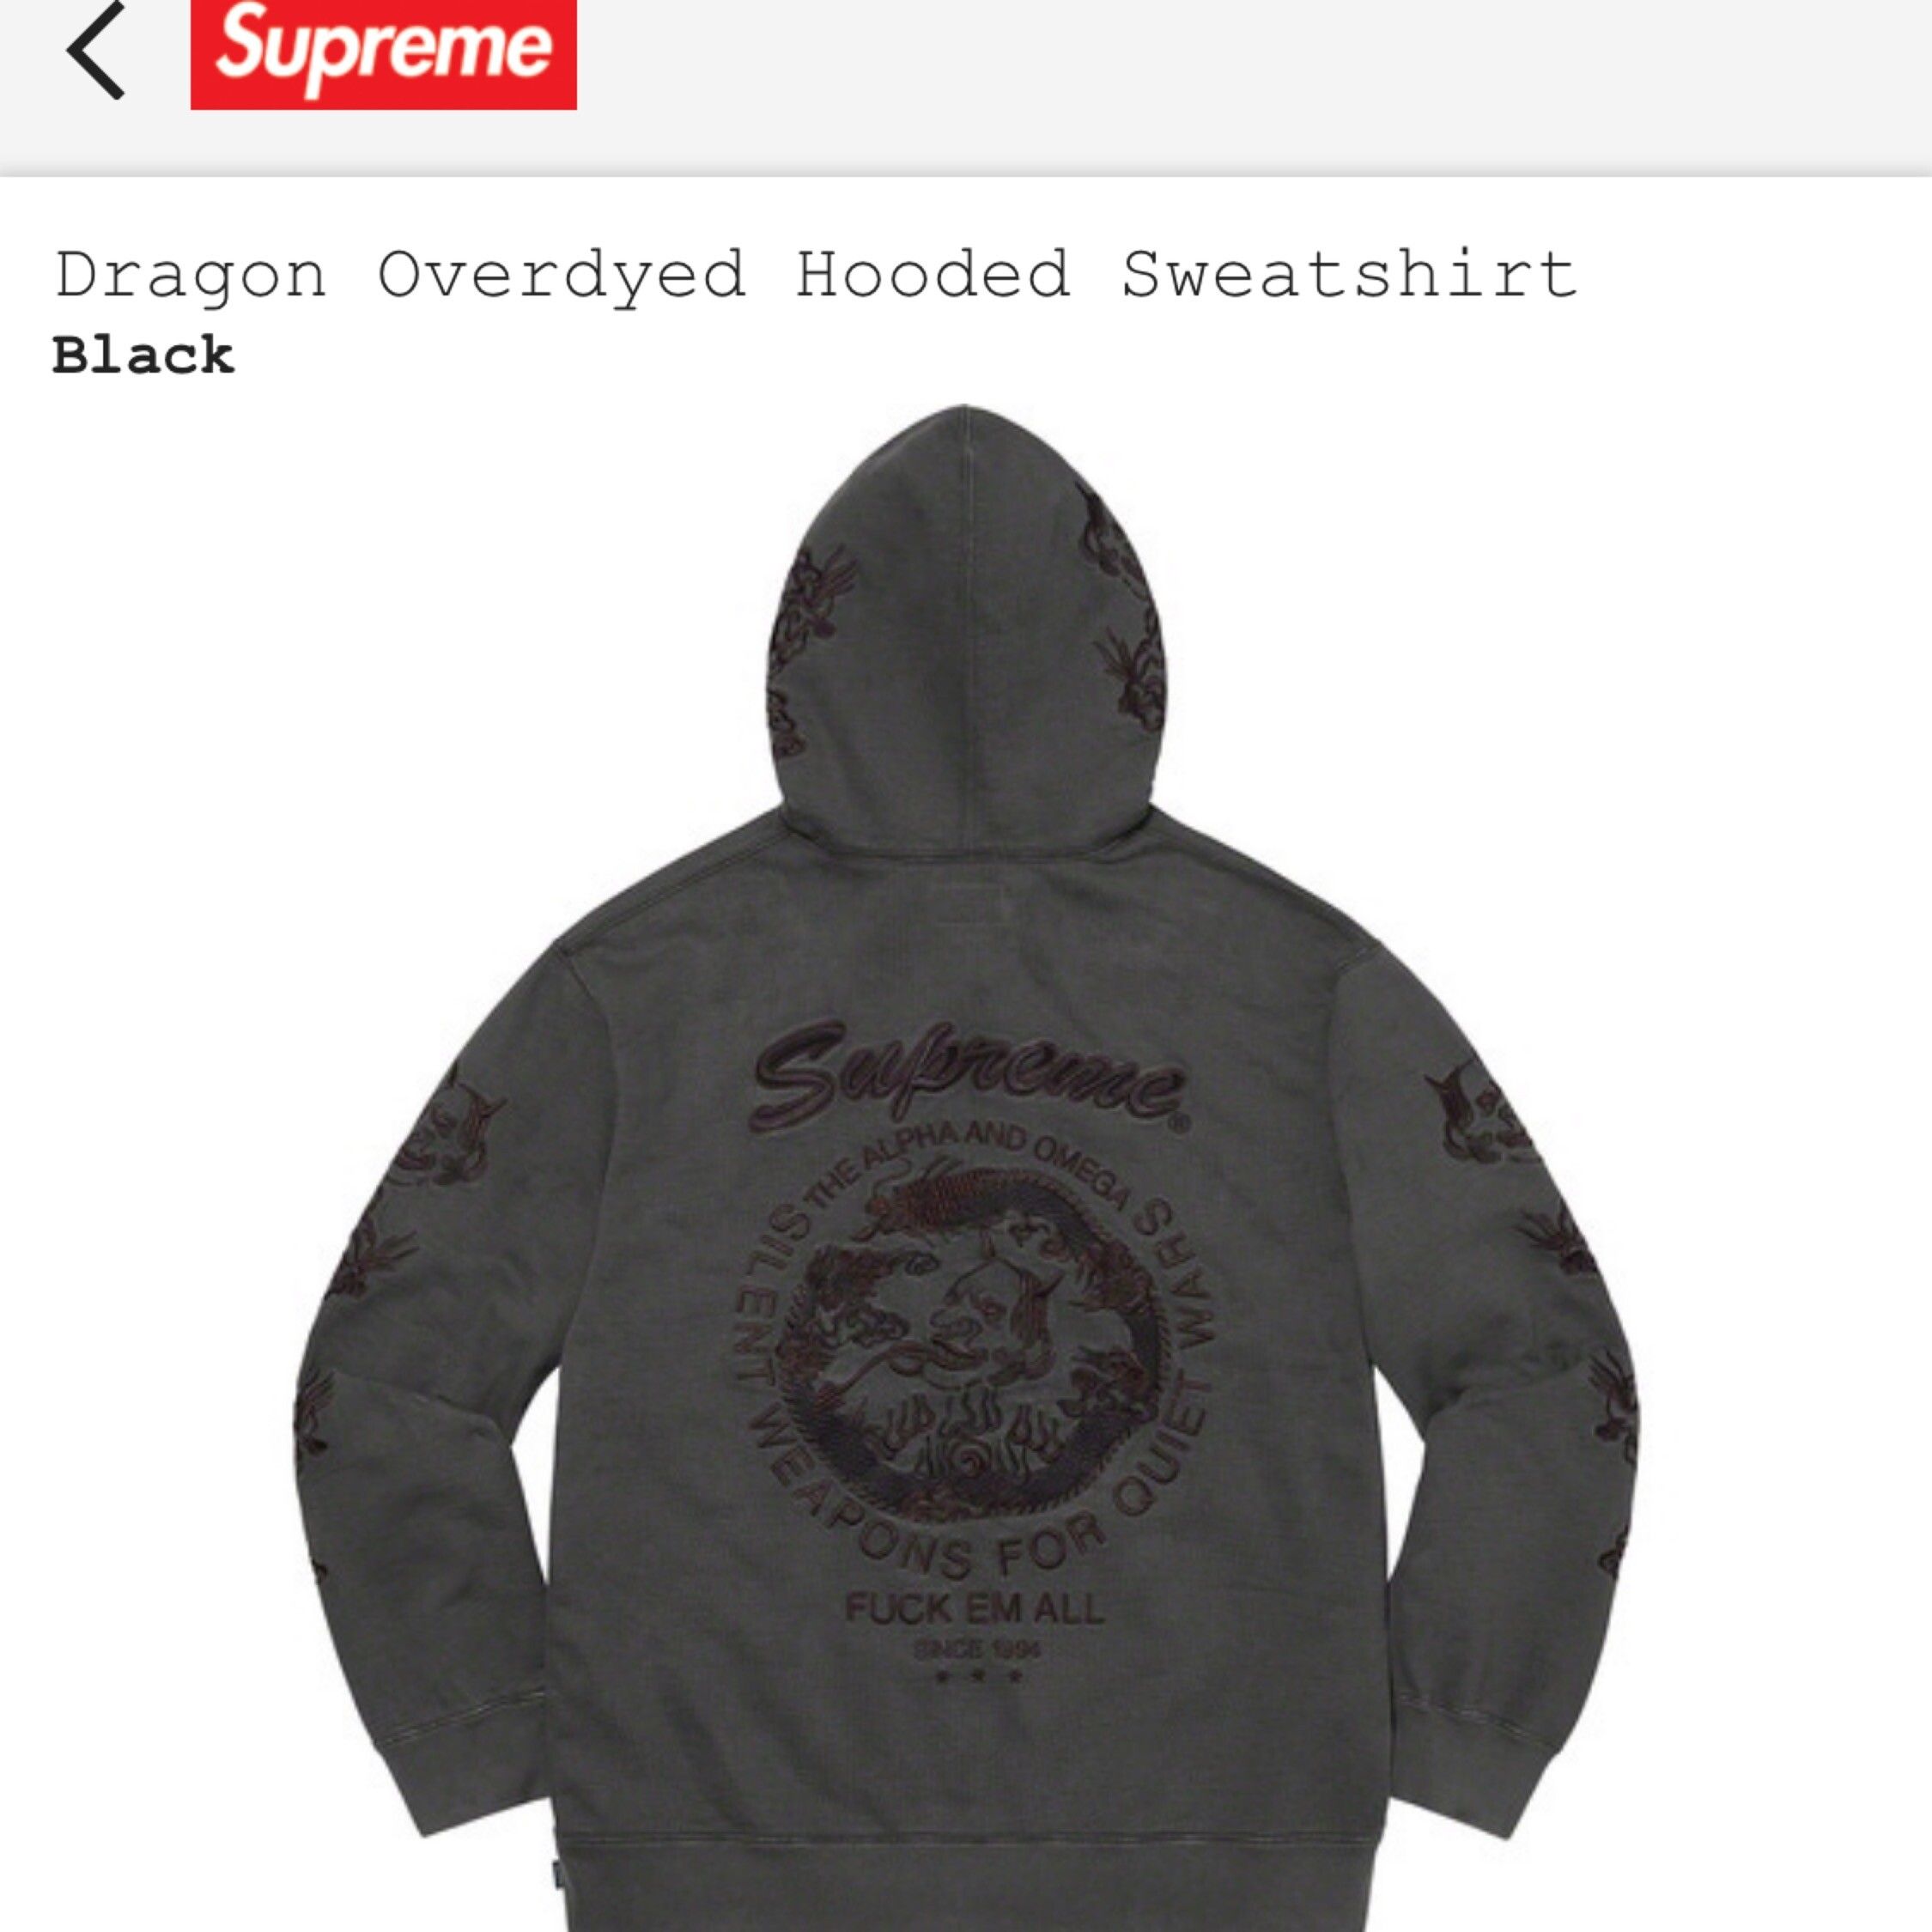 Supreme Supreme overdyed dragon hoodie black | Grailed